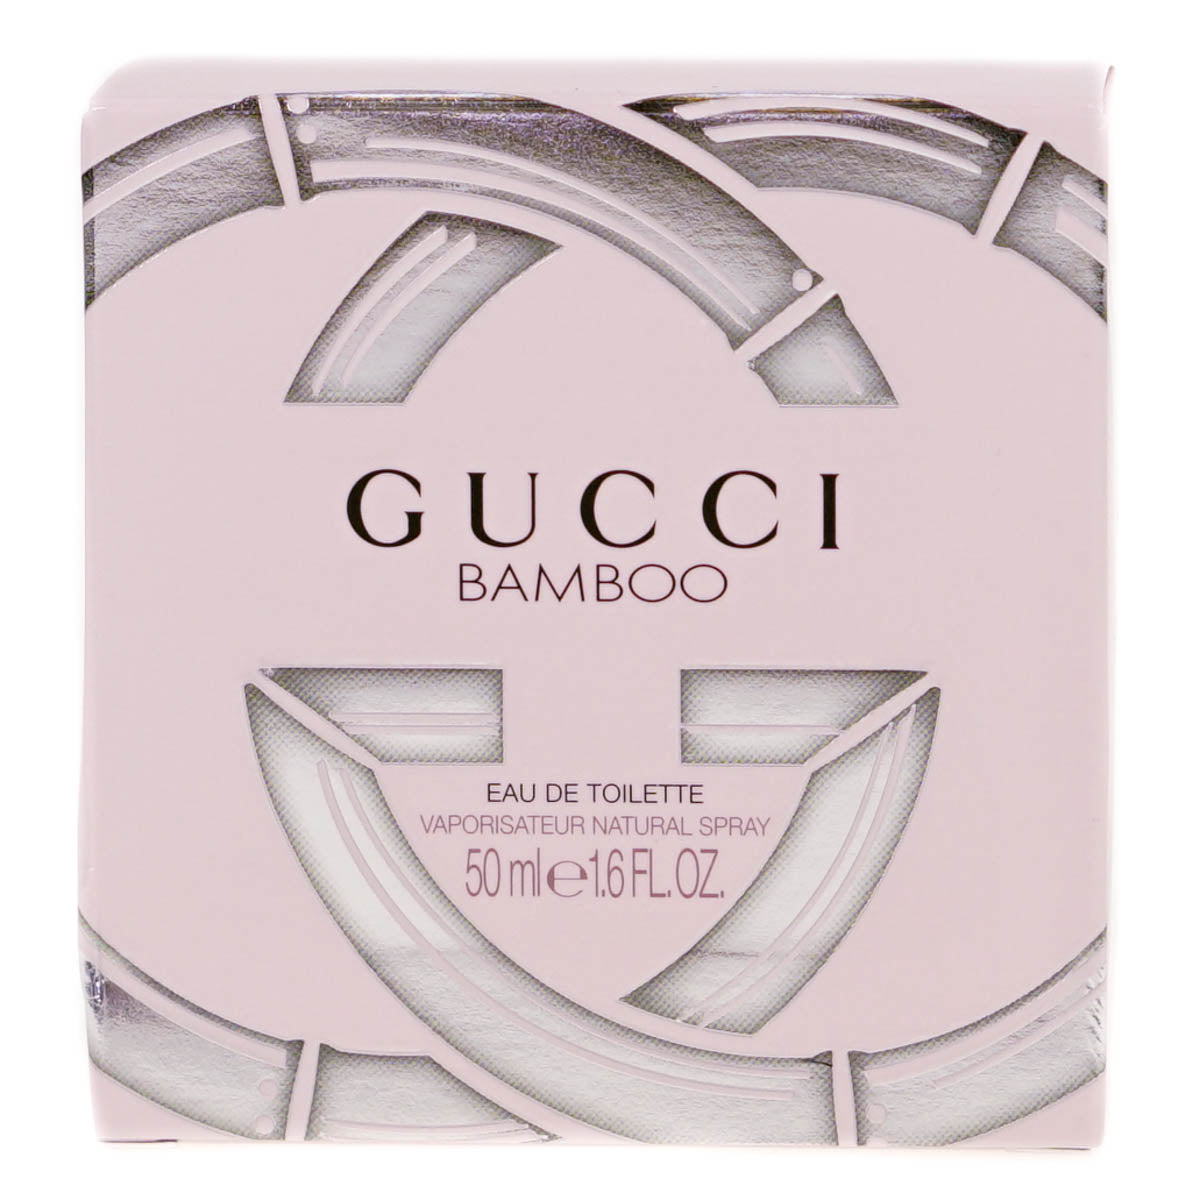 Gucci Bamboo 50ml Eau De Toilette (Blemished Box)